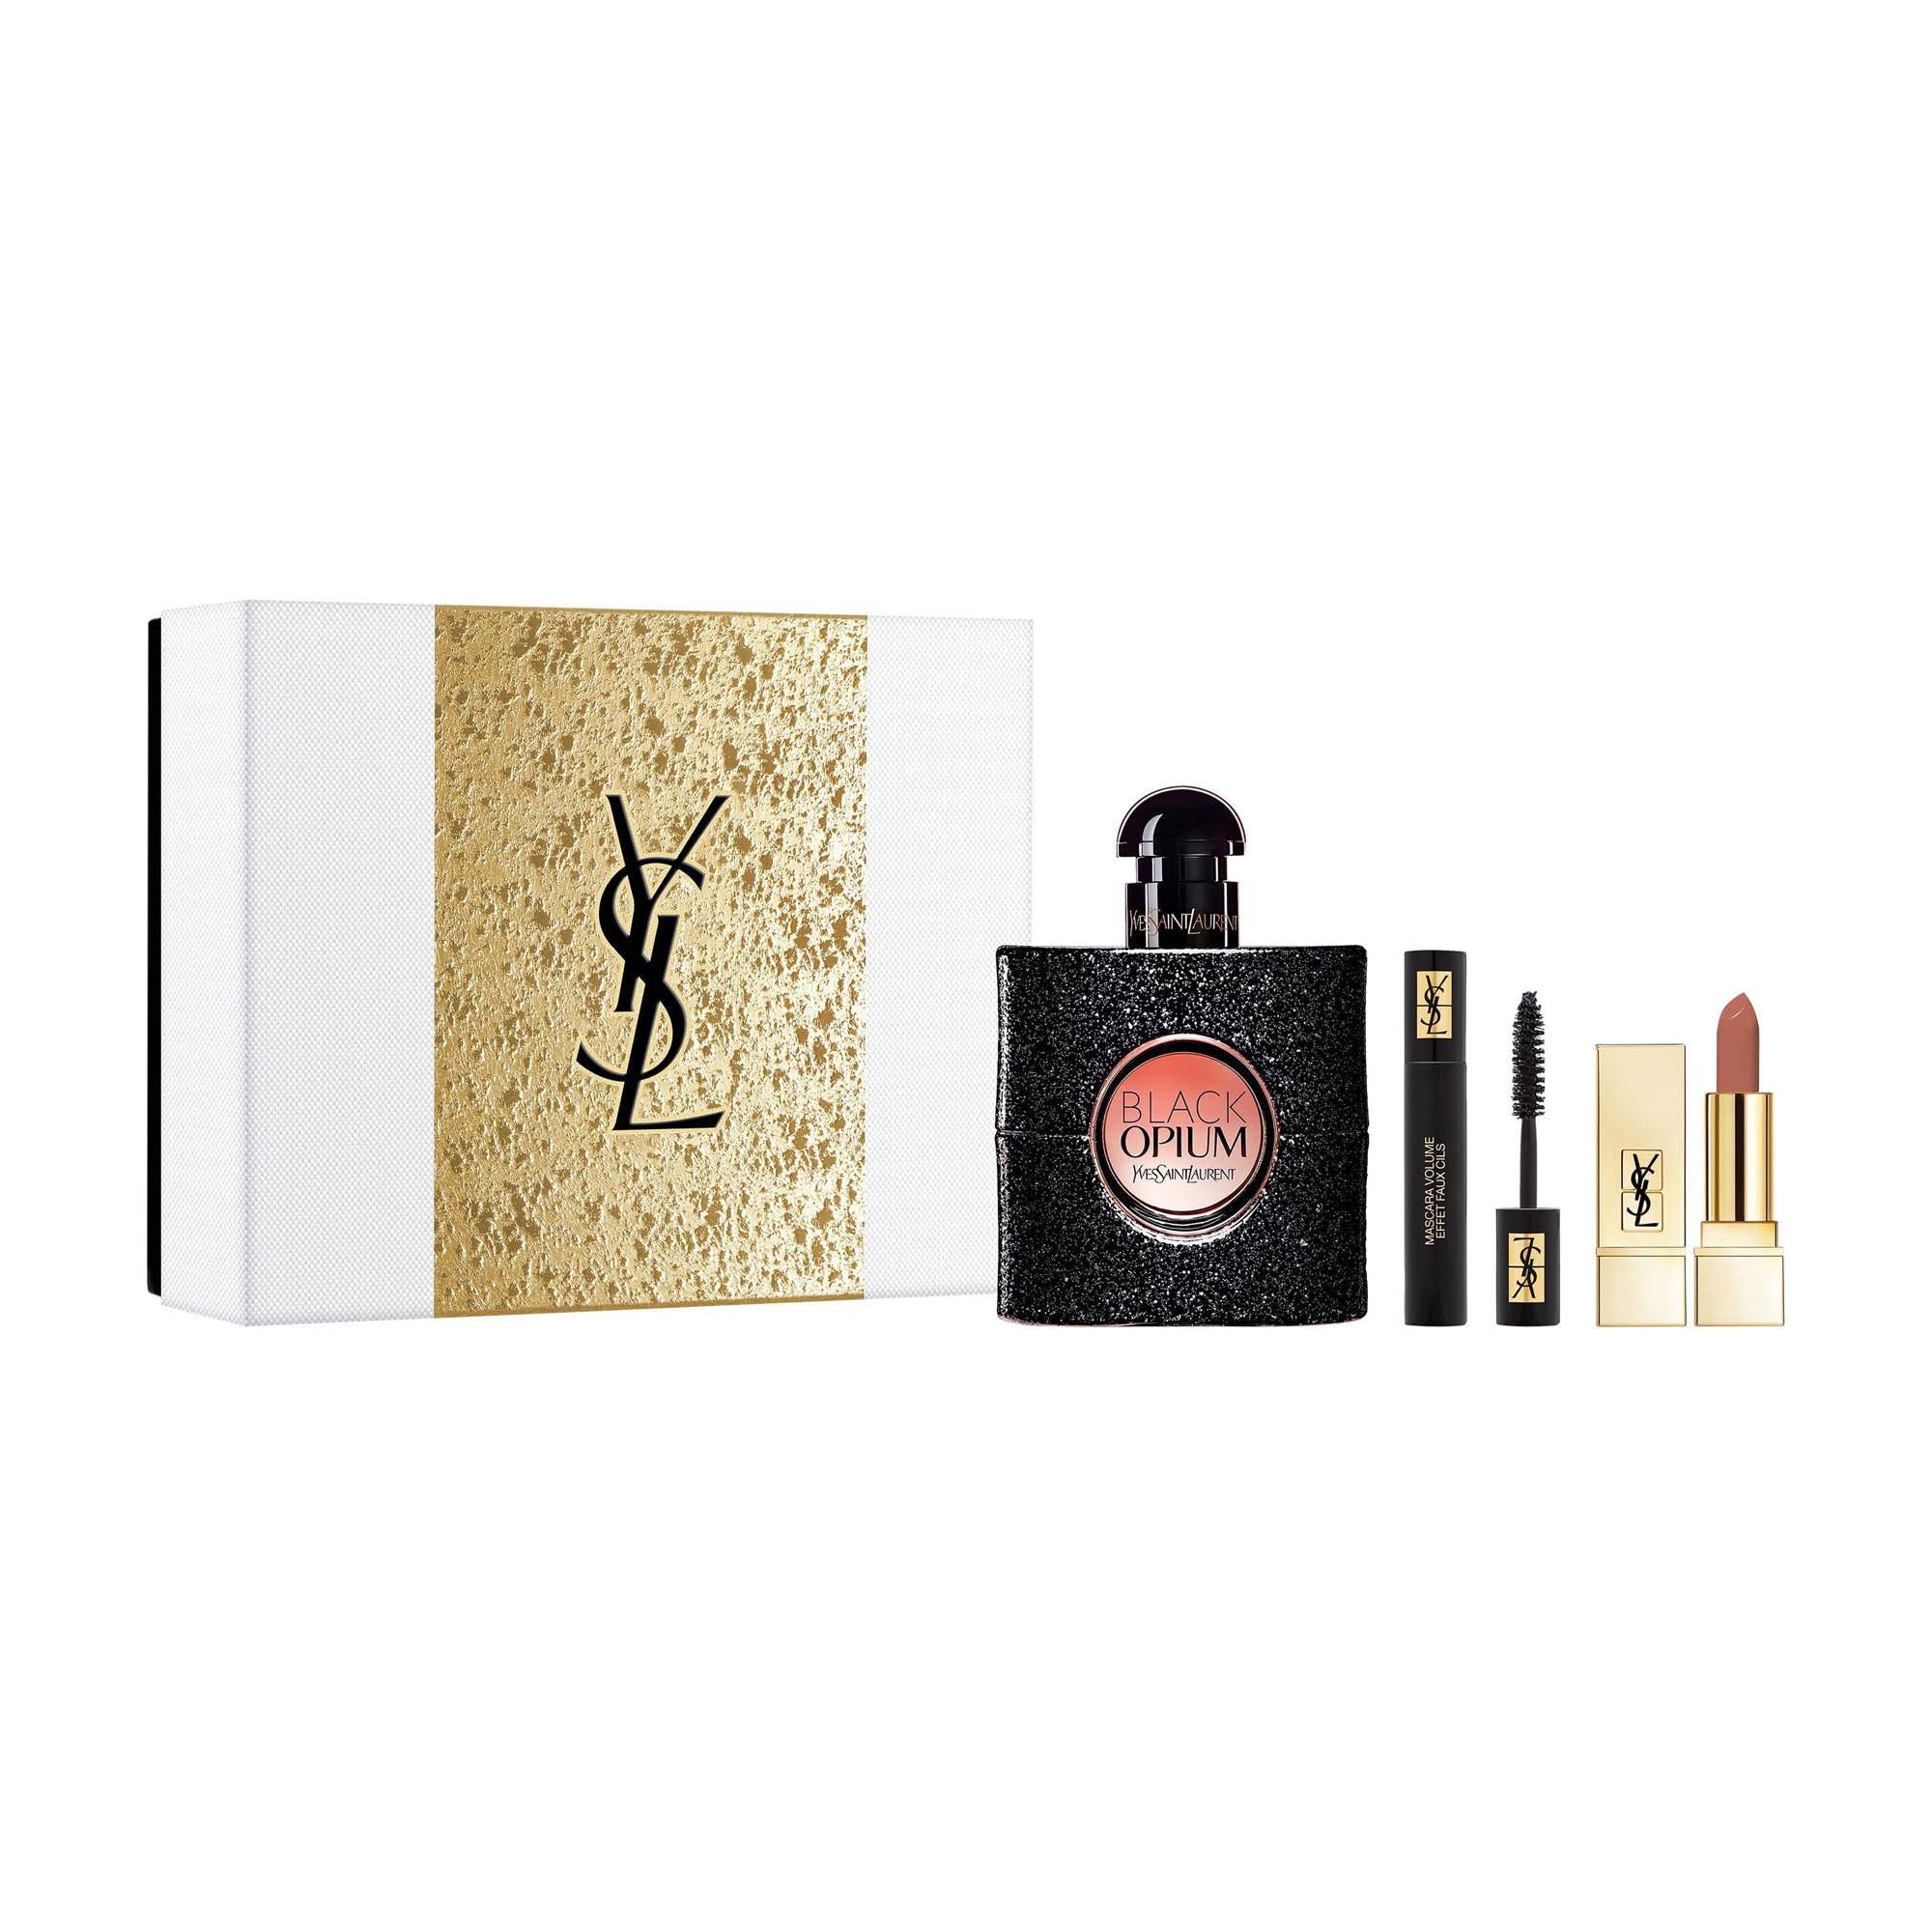 Yves Saint Laurent Black Opium Eau De Parfum Gift Set 50ml